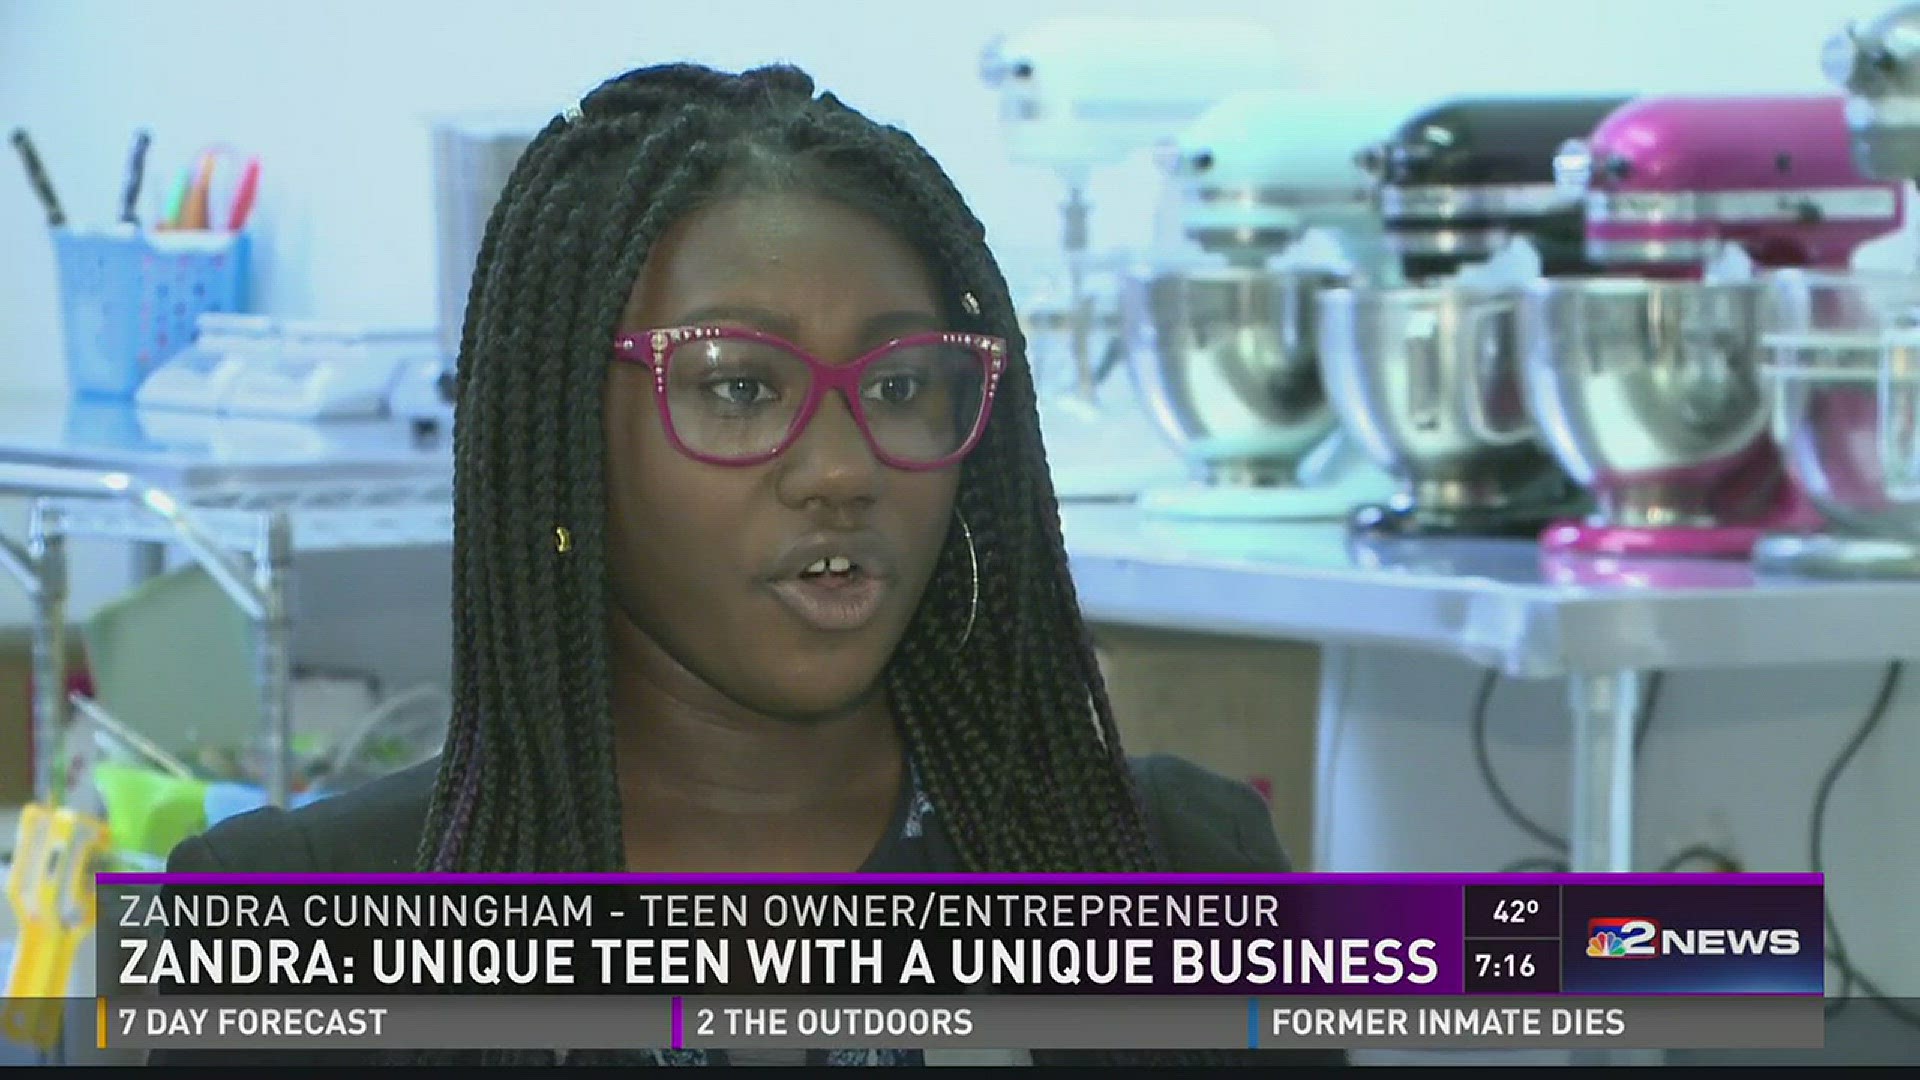 Zandra: Unique Teen with a Unique Business